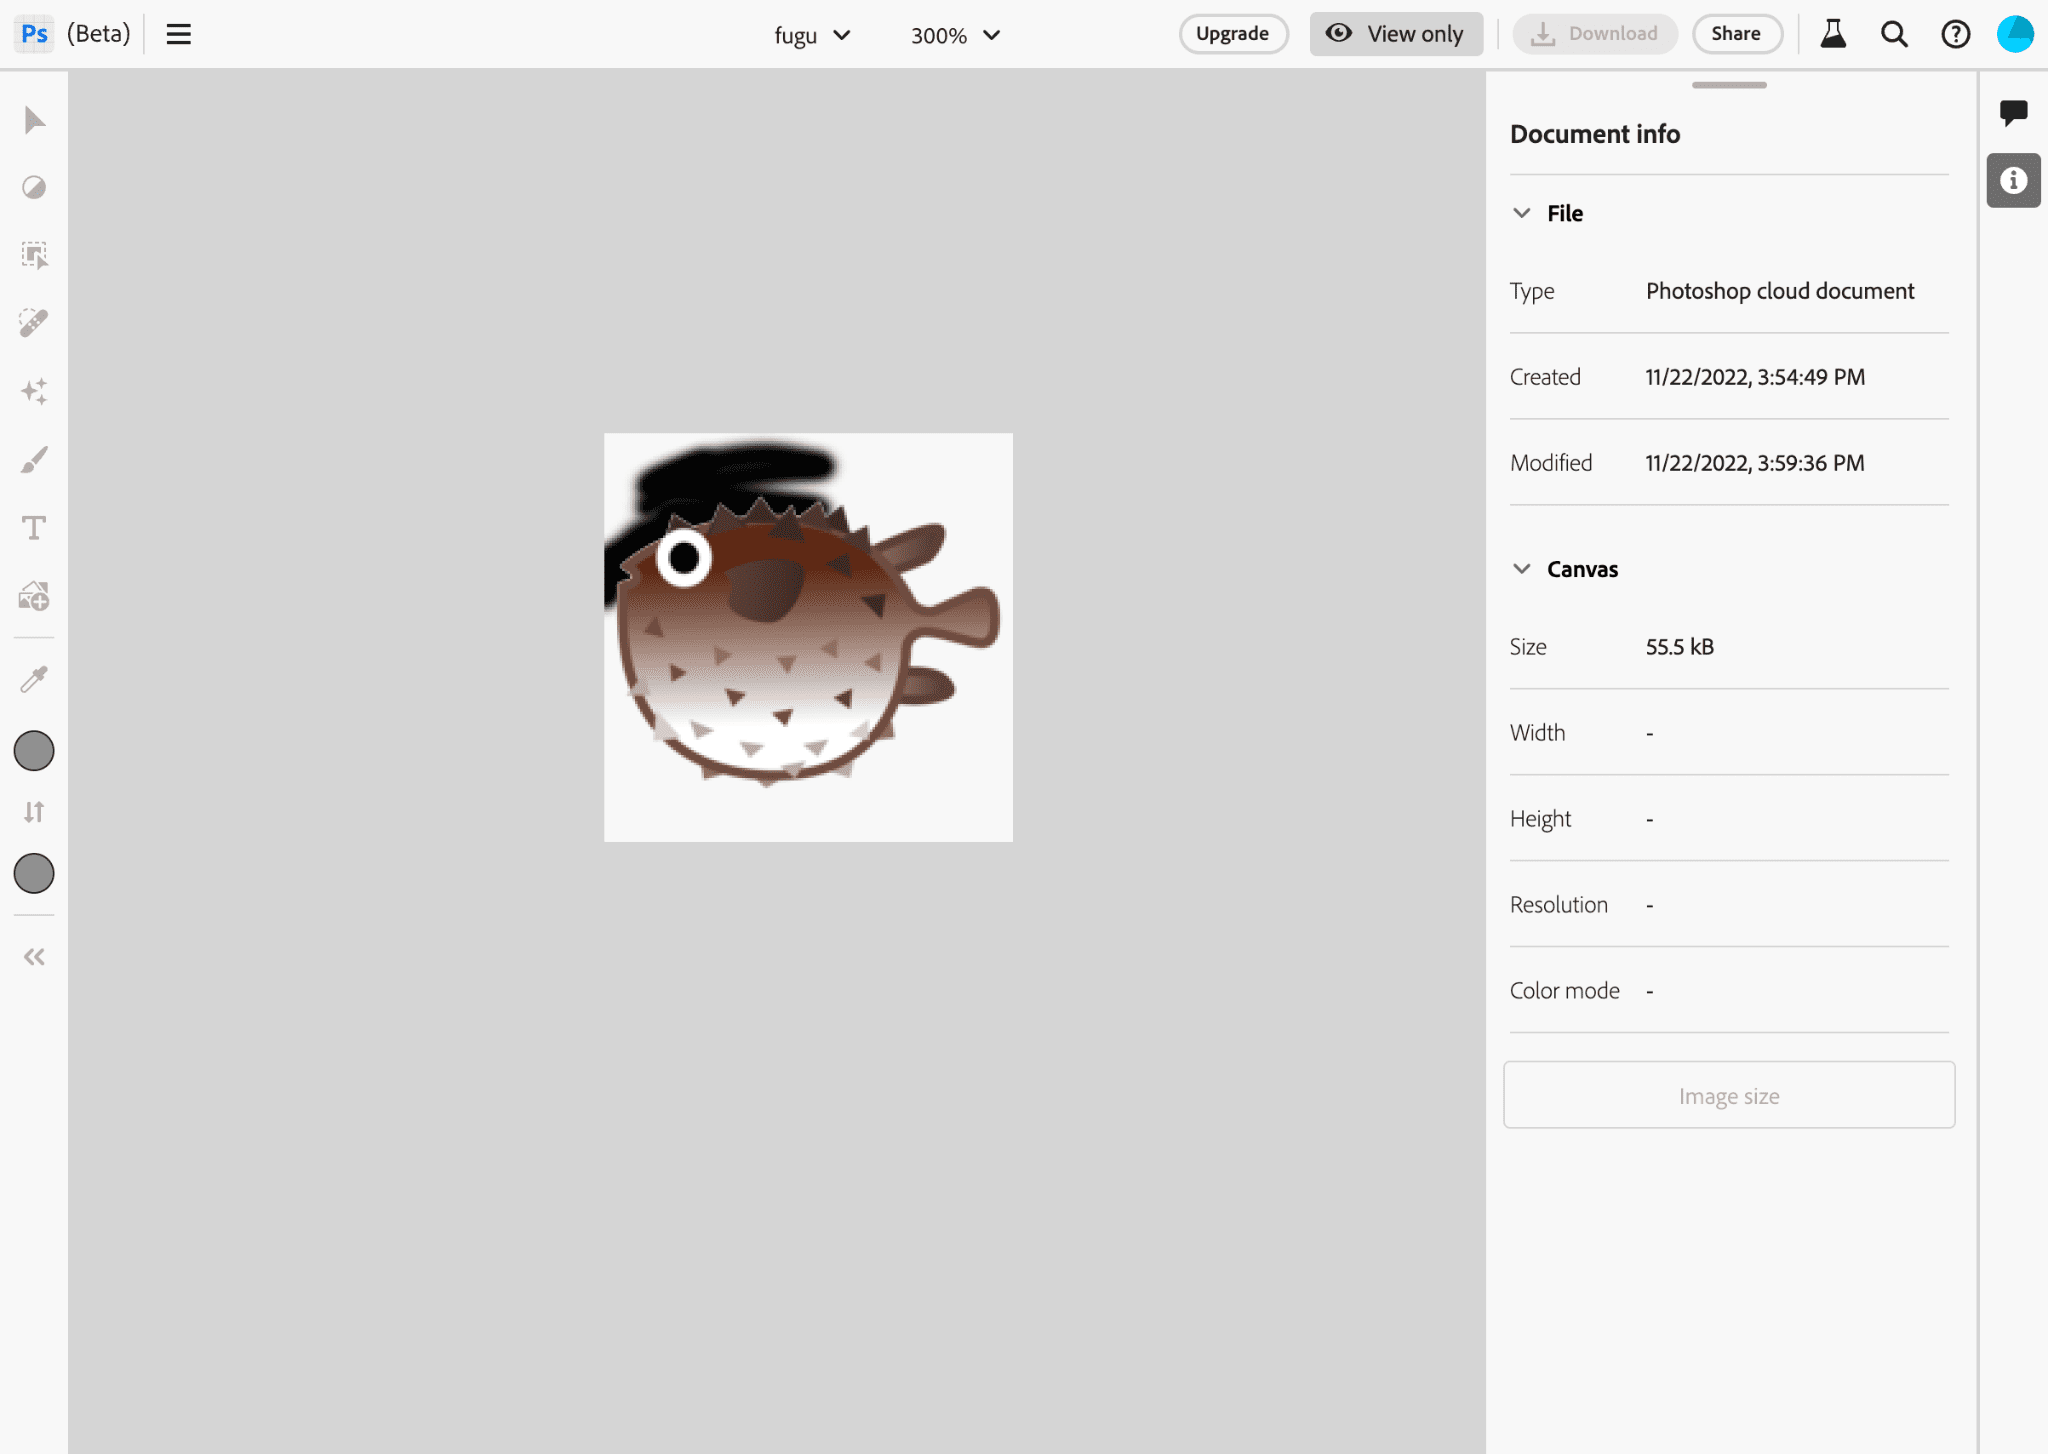 Project Fugu ロゴの画像を編集している Photoshop アプリ。